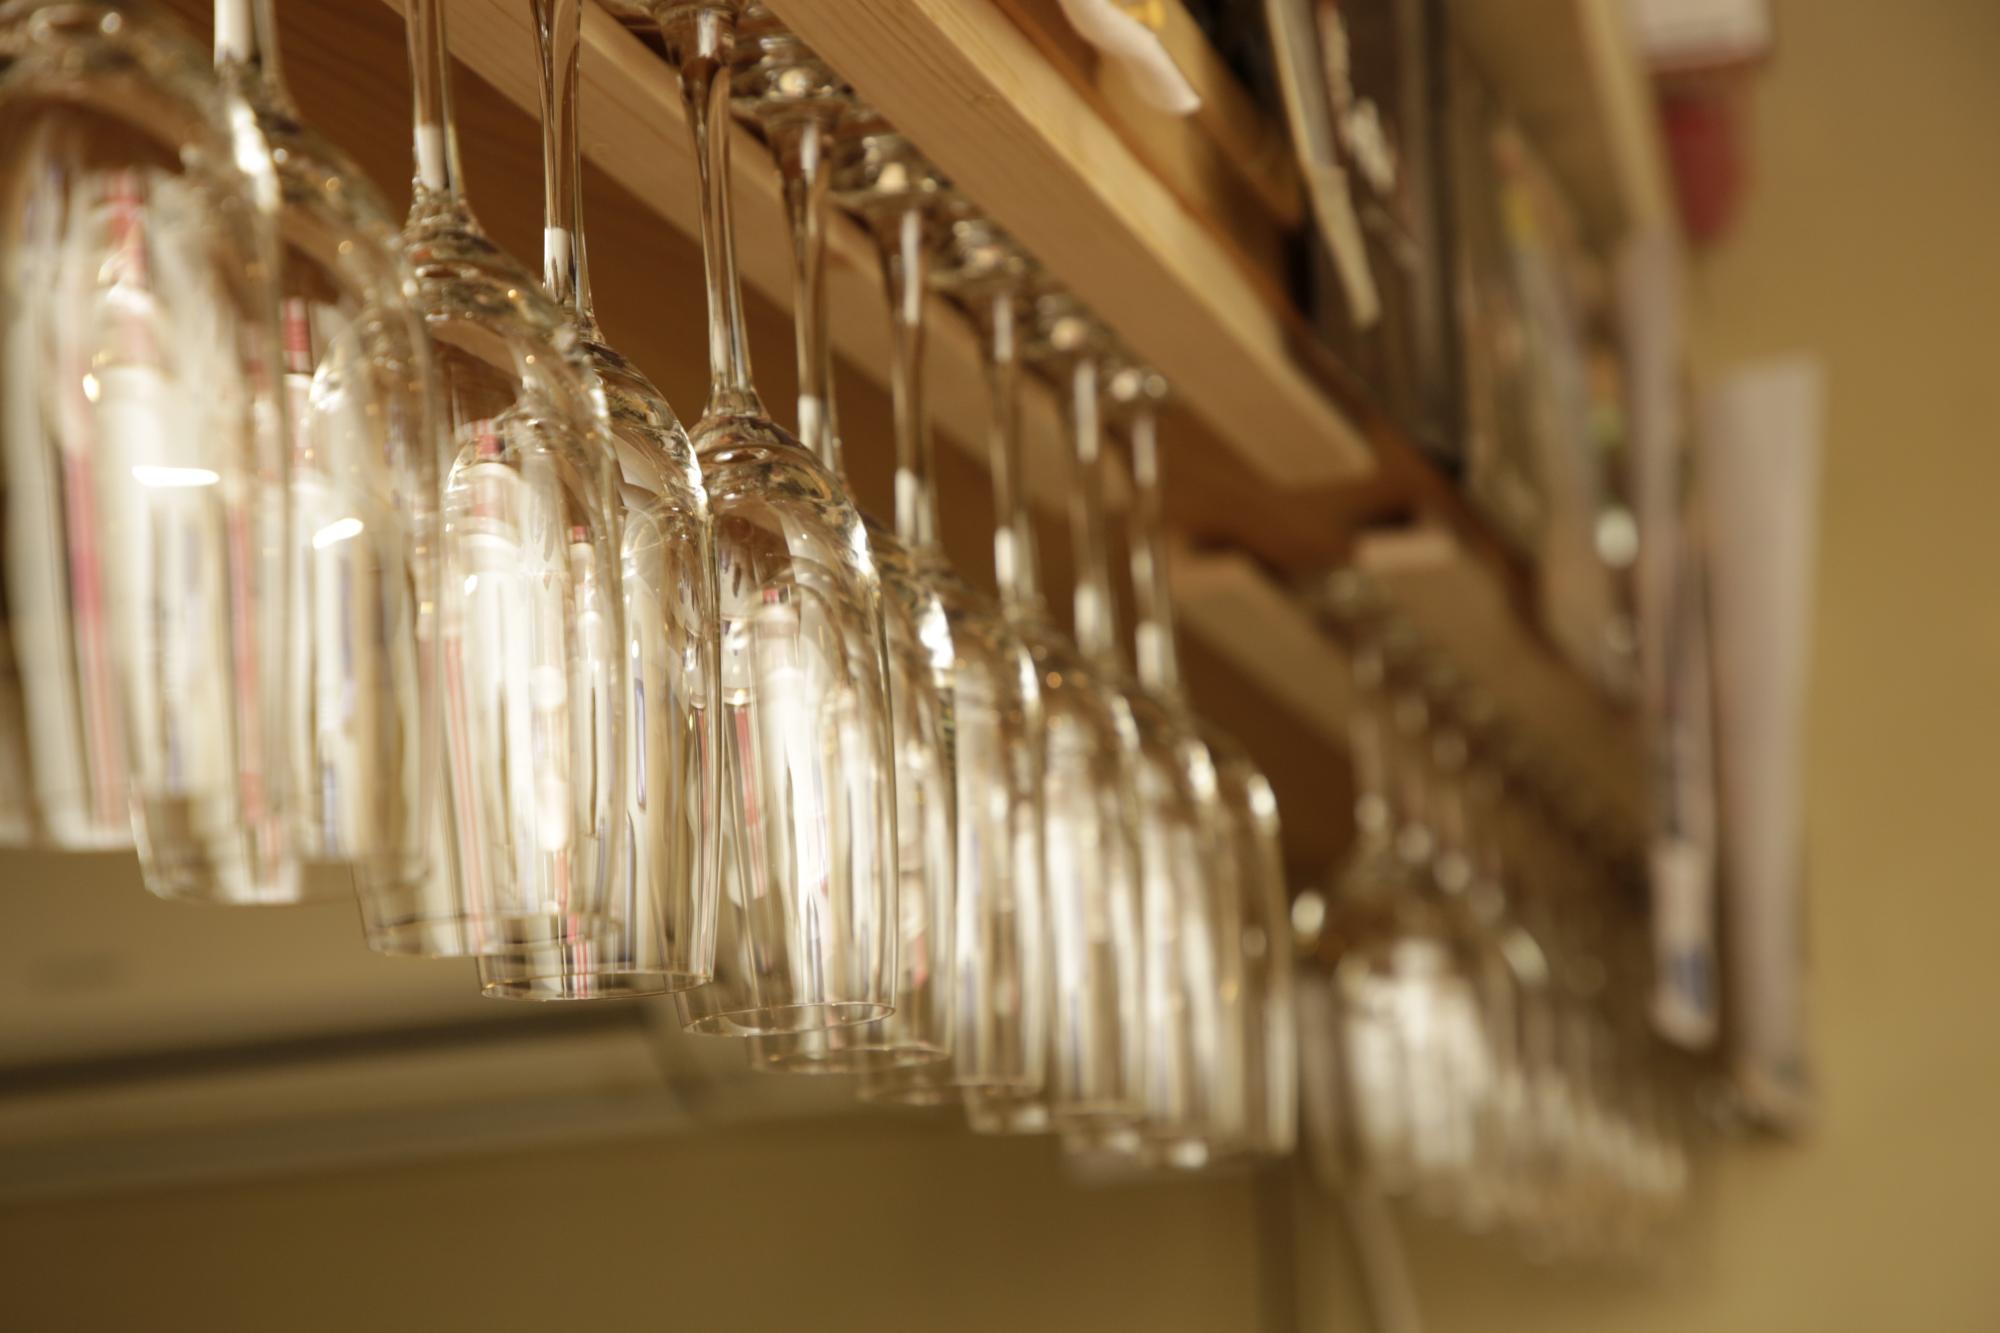 グラスハンガーにたくさんのワイングラスが掛けられている様子を写した写真。